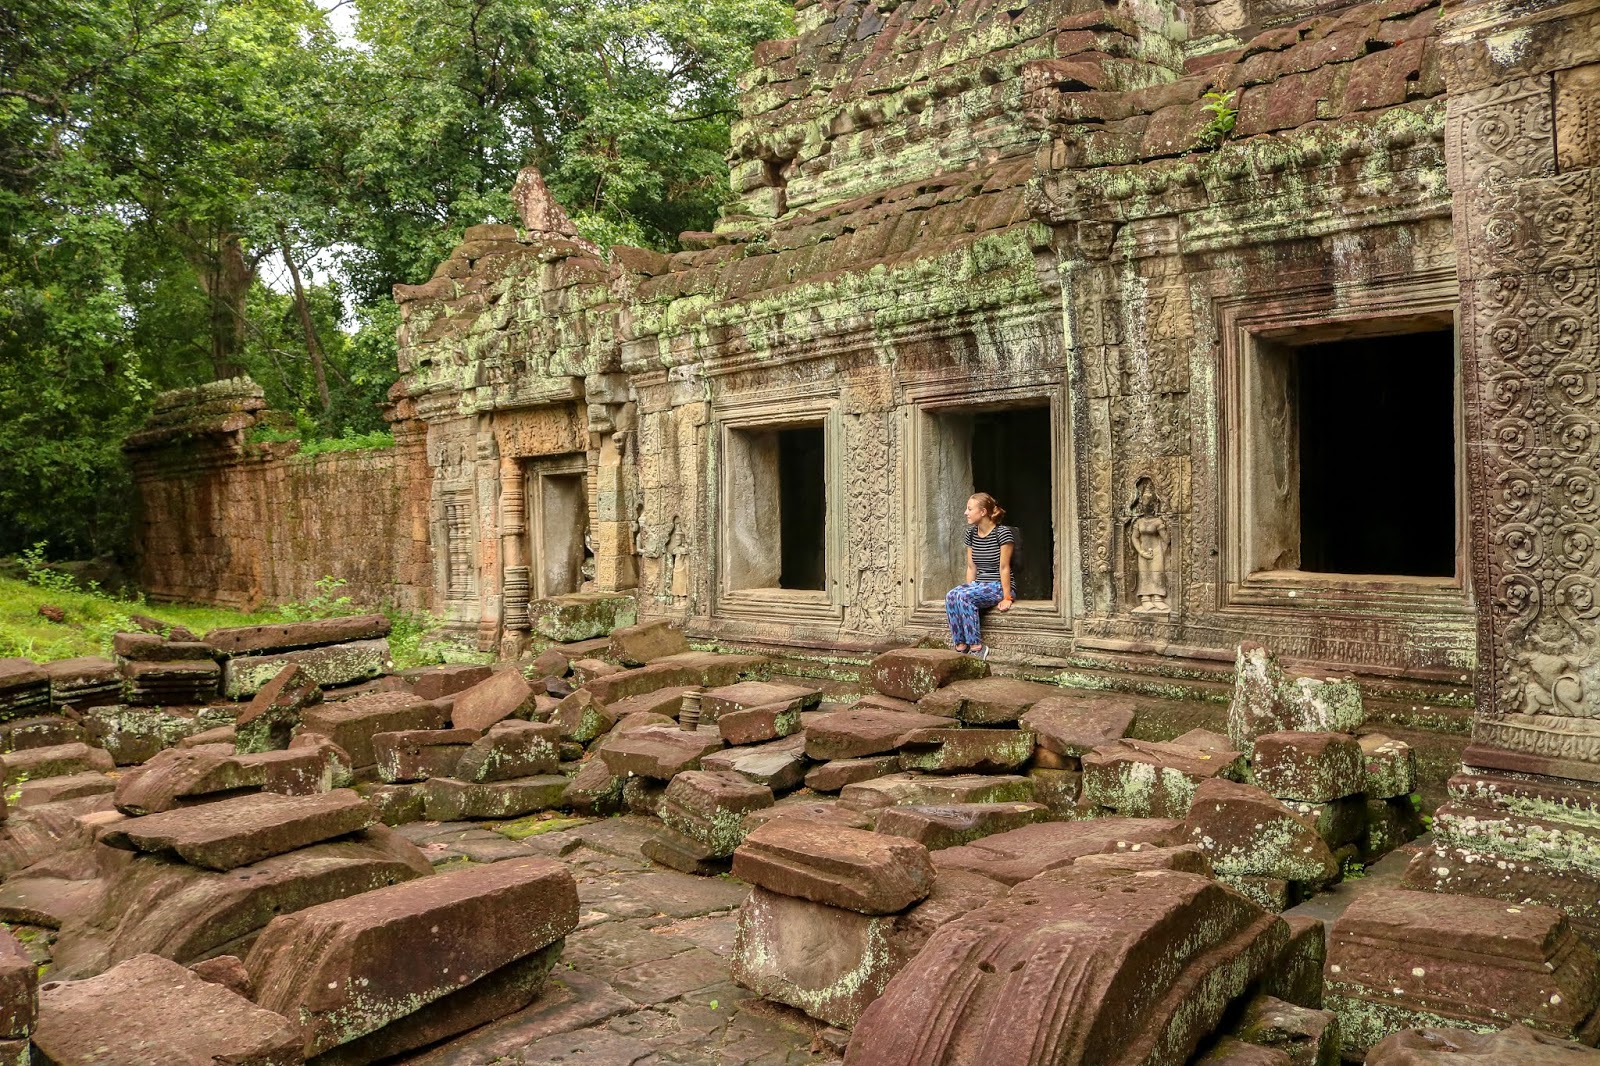 Preah Khan, Angkor Wat